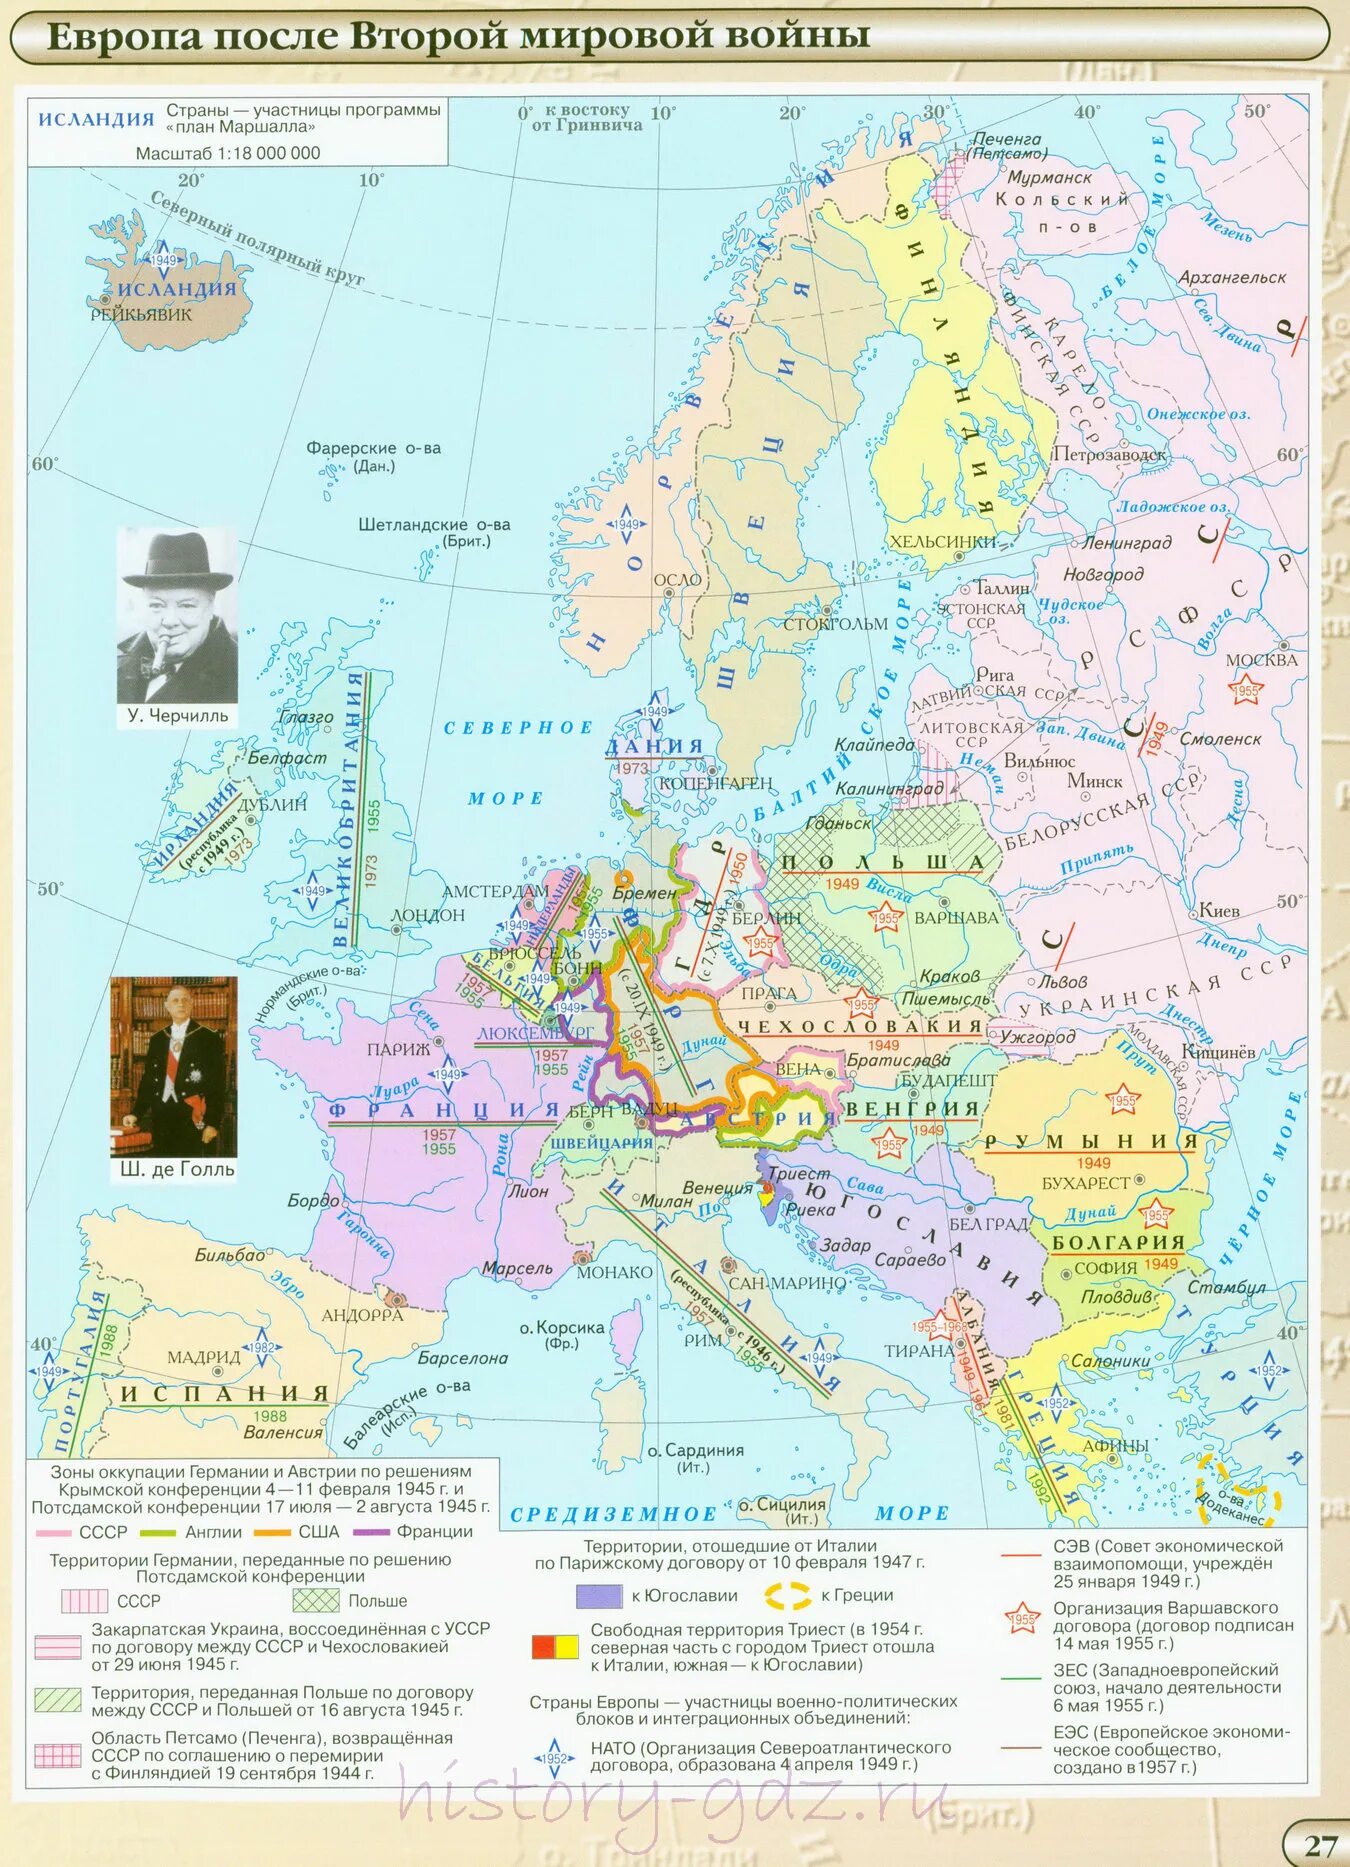 Европа после второй мировой войны контурная карта. Карта Европы после 2 мировой войны. Европа после 2 мировой войны контурная карта. Европа после второй мировой войны контурная карта 10 класс.